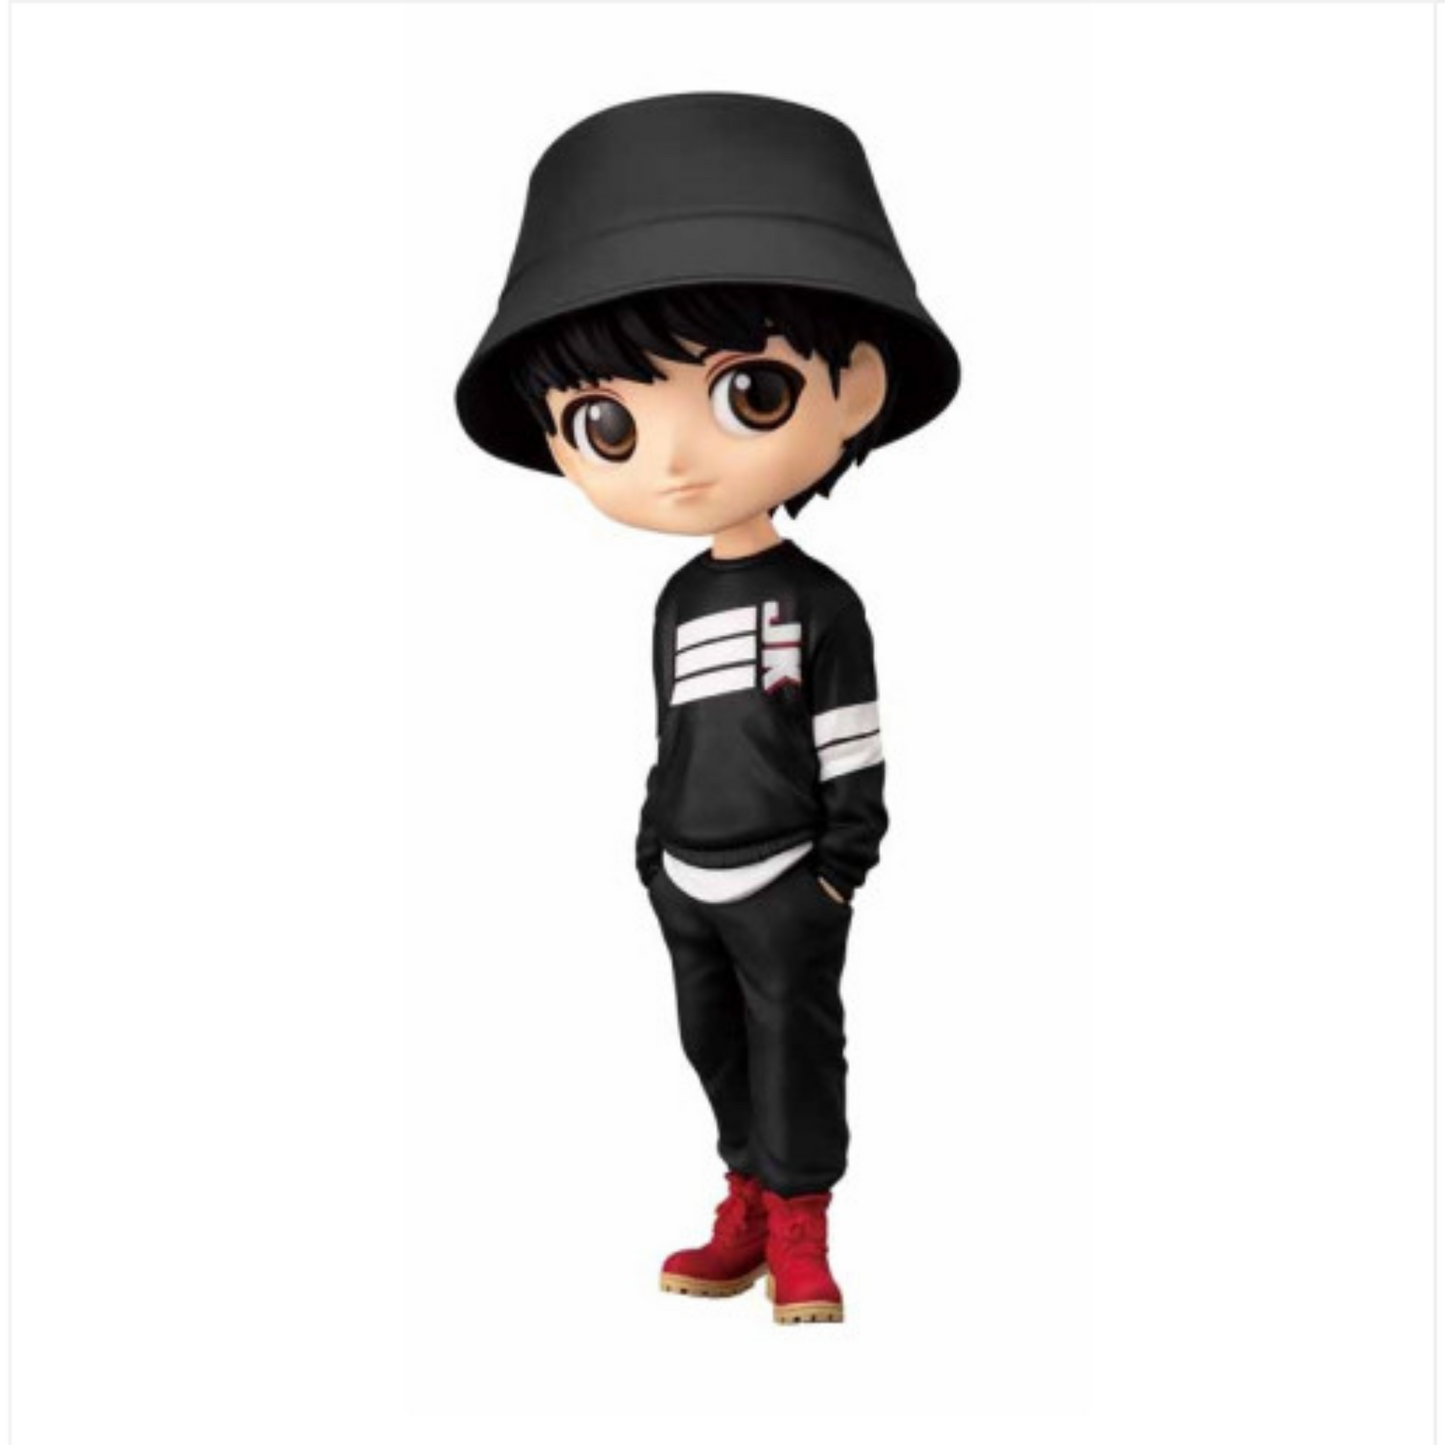 واحد - تيني تان اليابان المحدودة نسخة مايك دروب | (ONE) BTS - TinyTAN Japan Limited Q Posket Figure Mic Drop